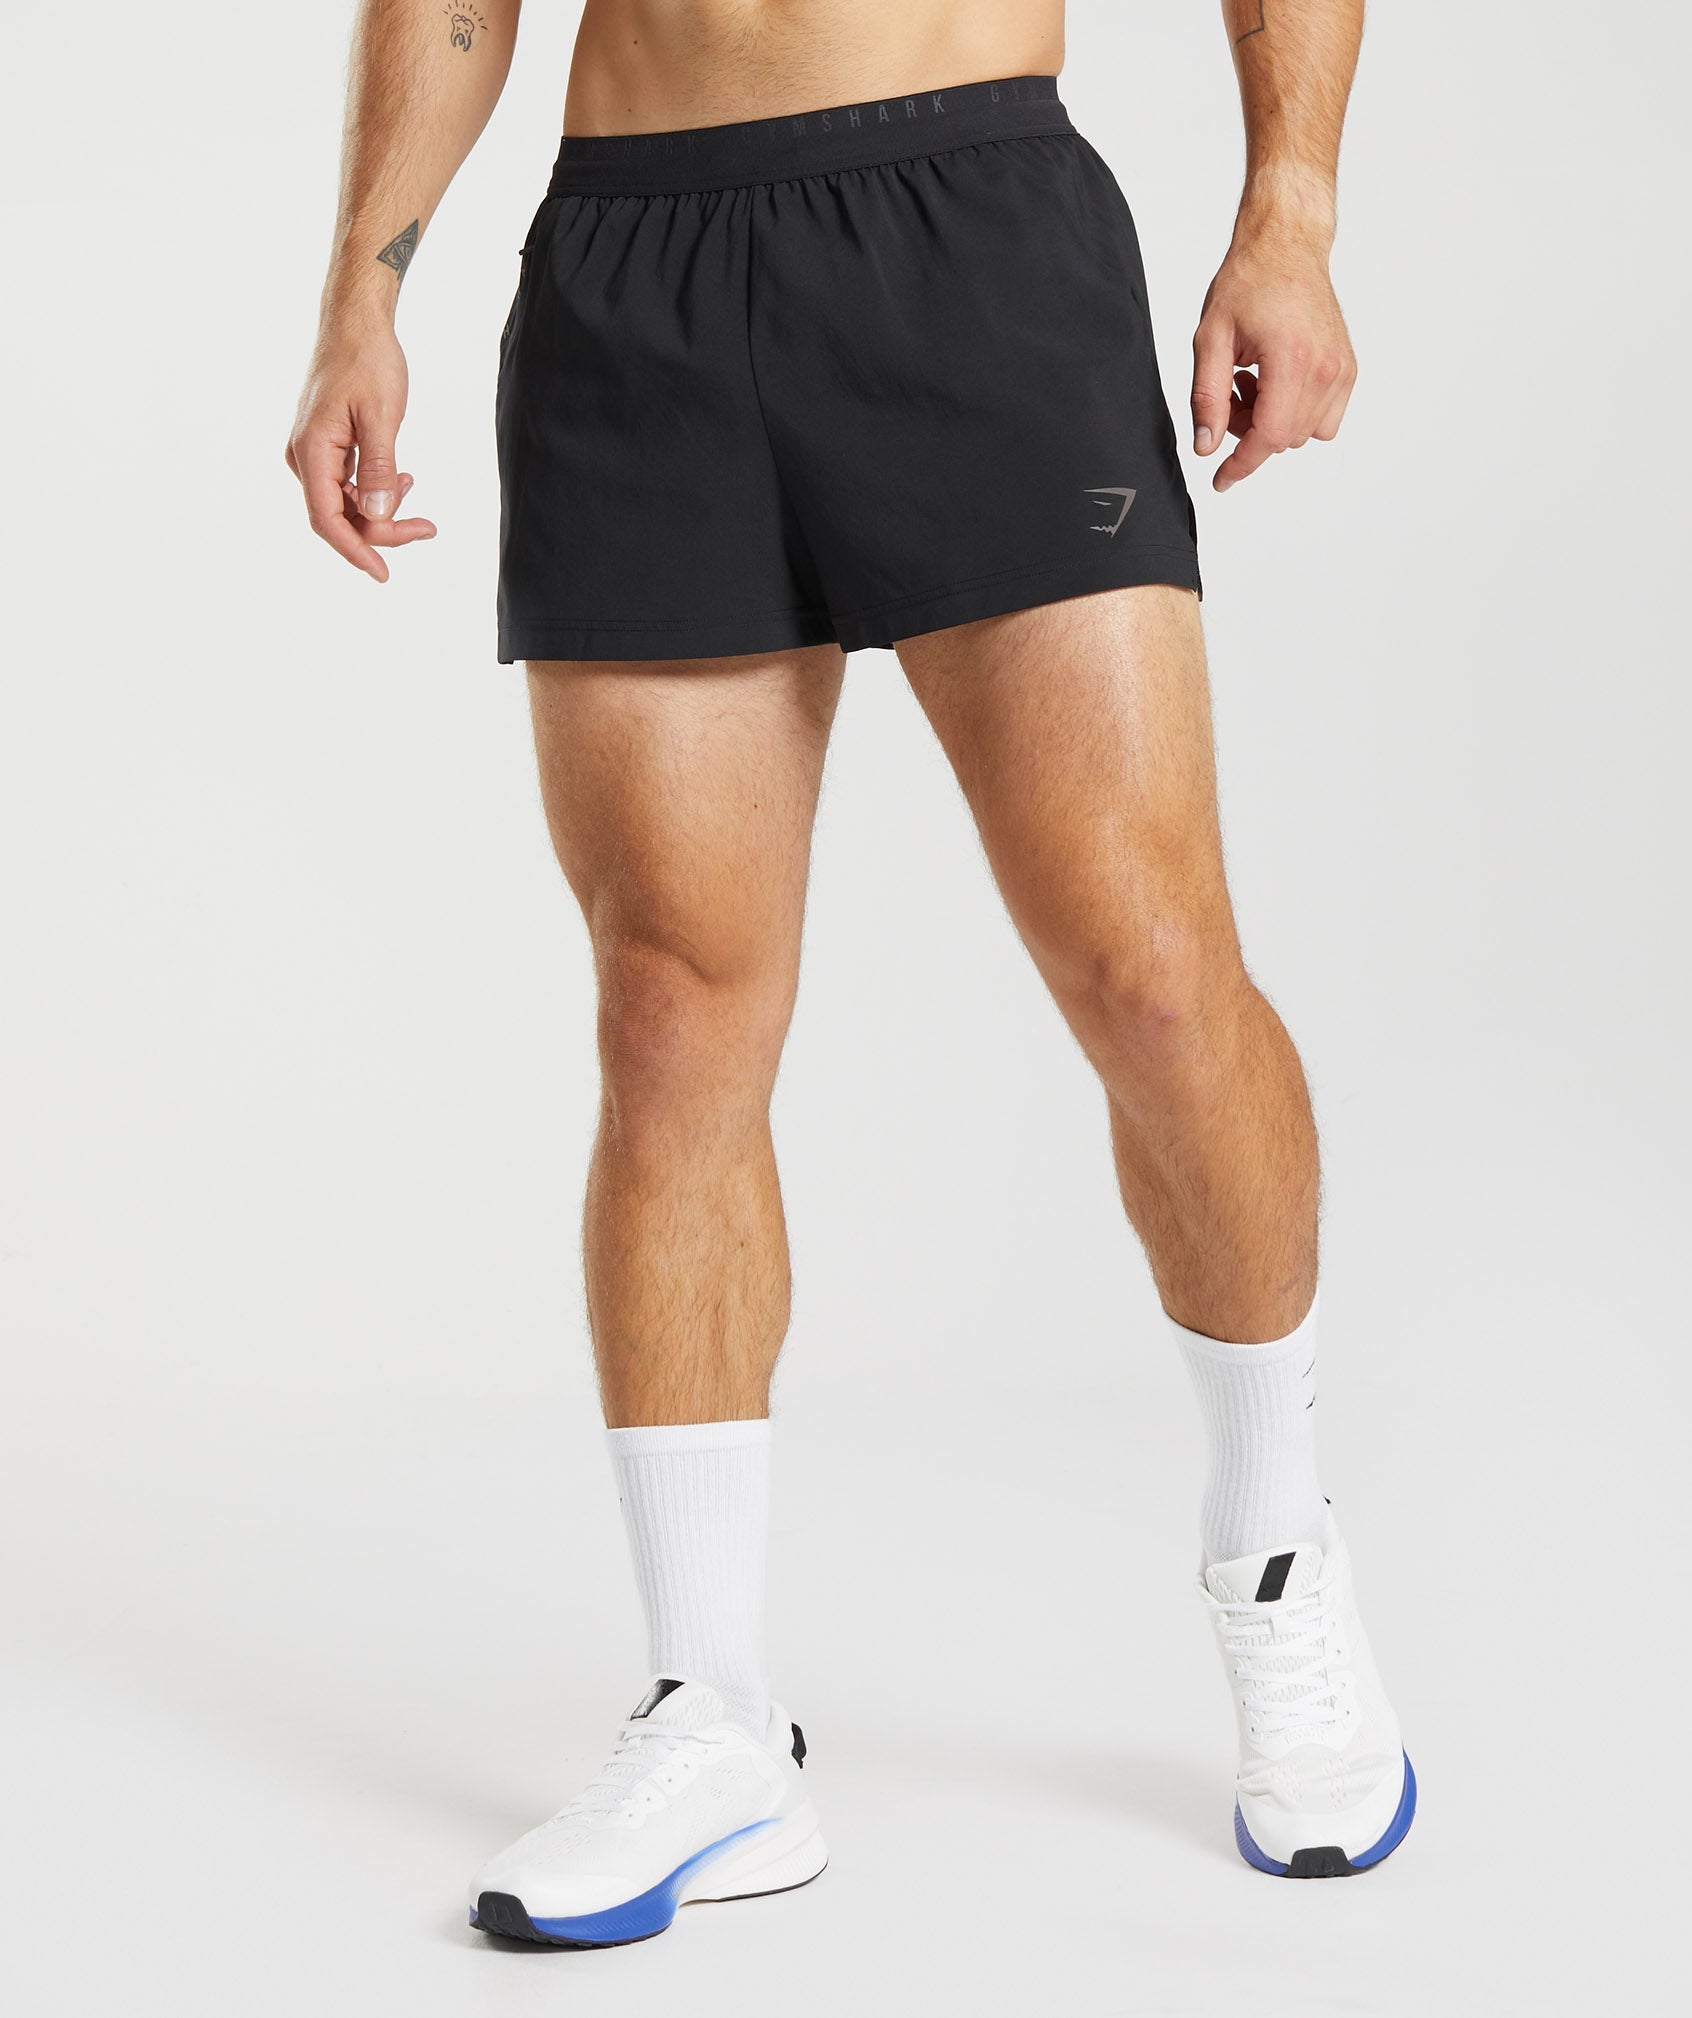 Men's Focus Shorts, Black